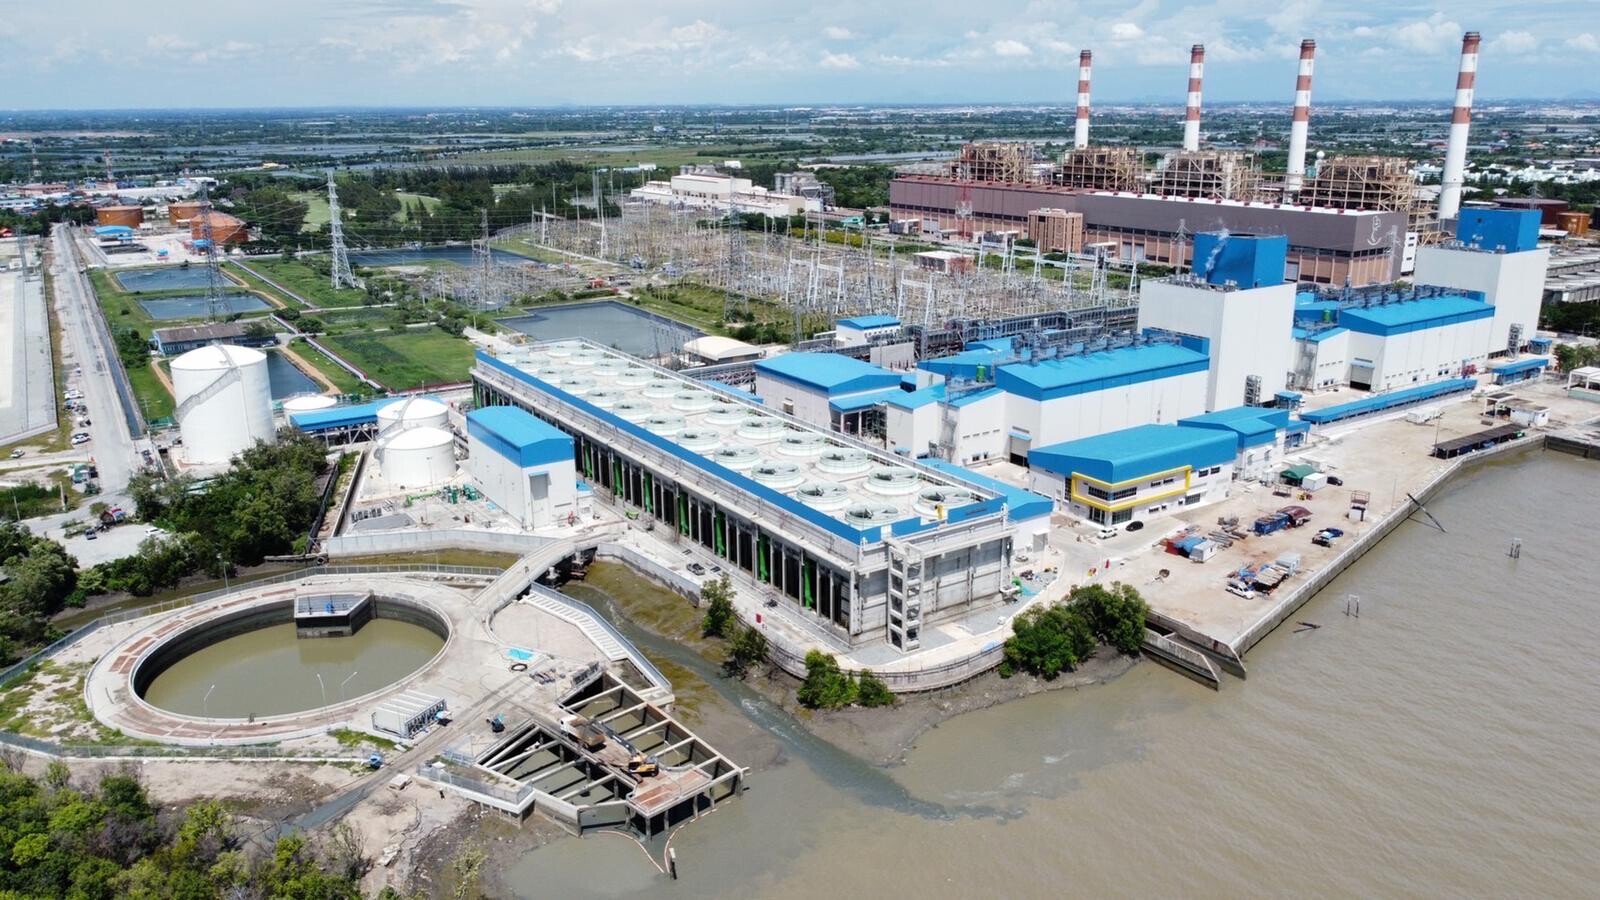 เครื่องกังหันก๊าซ HA ของจีอี เดินเครื่องโรงไฟฟ้าในประเทศไทยเป็นครั้งแรก ที่โรงไฟฟ้าบางปะกงของกฟผ. เพิ่มกำลังการผลิตอีกราว 1,400 เมกะวัตต์